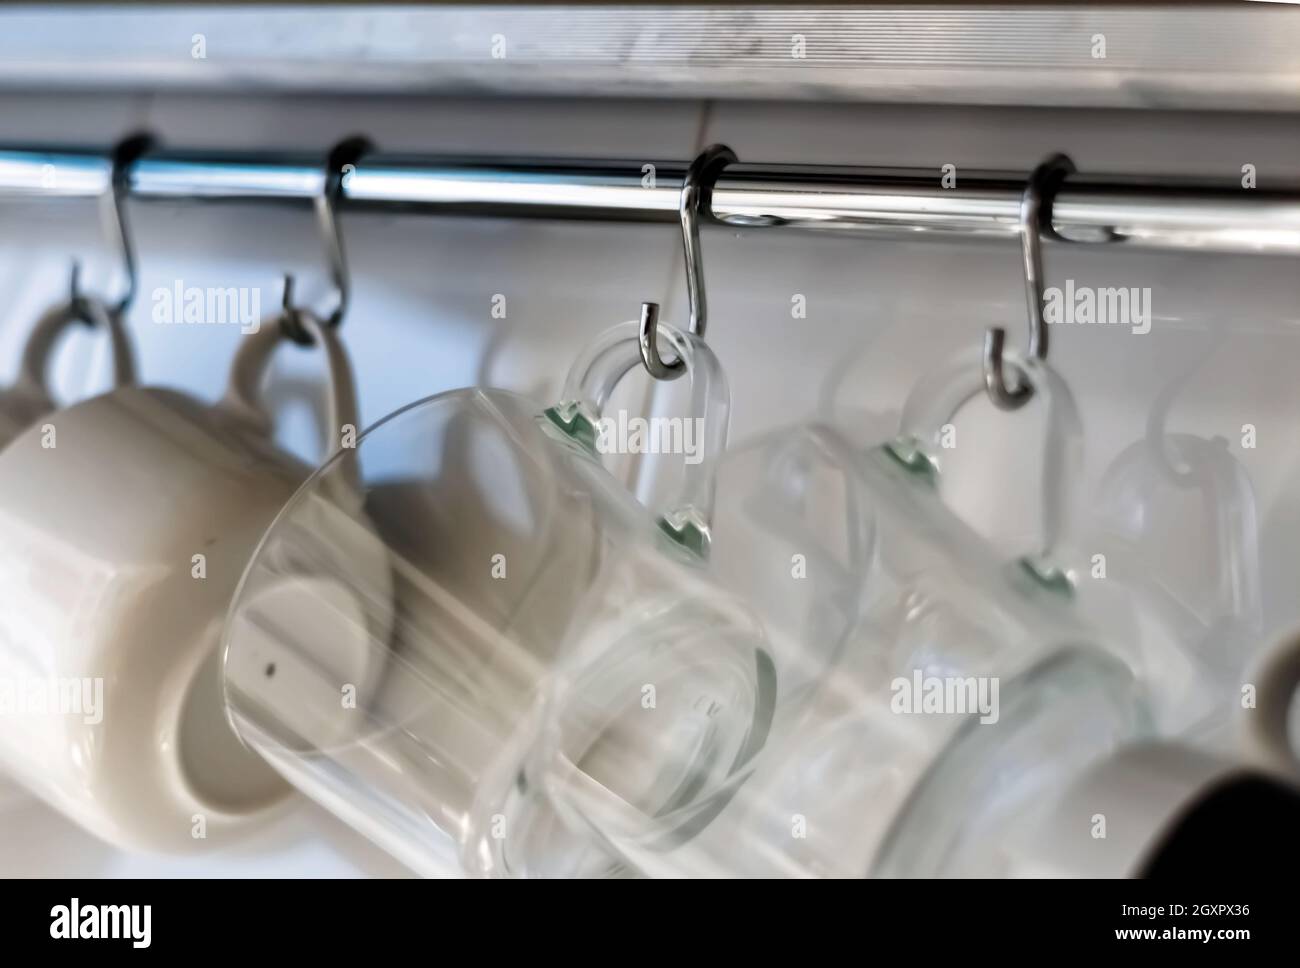 Un ensemble de mugs accrochés sur des crochets dans une cuisine moderne. Objets de tous les jours. Vie domestique. Banque D'Images